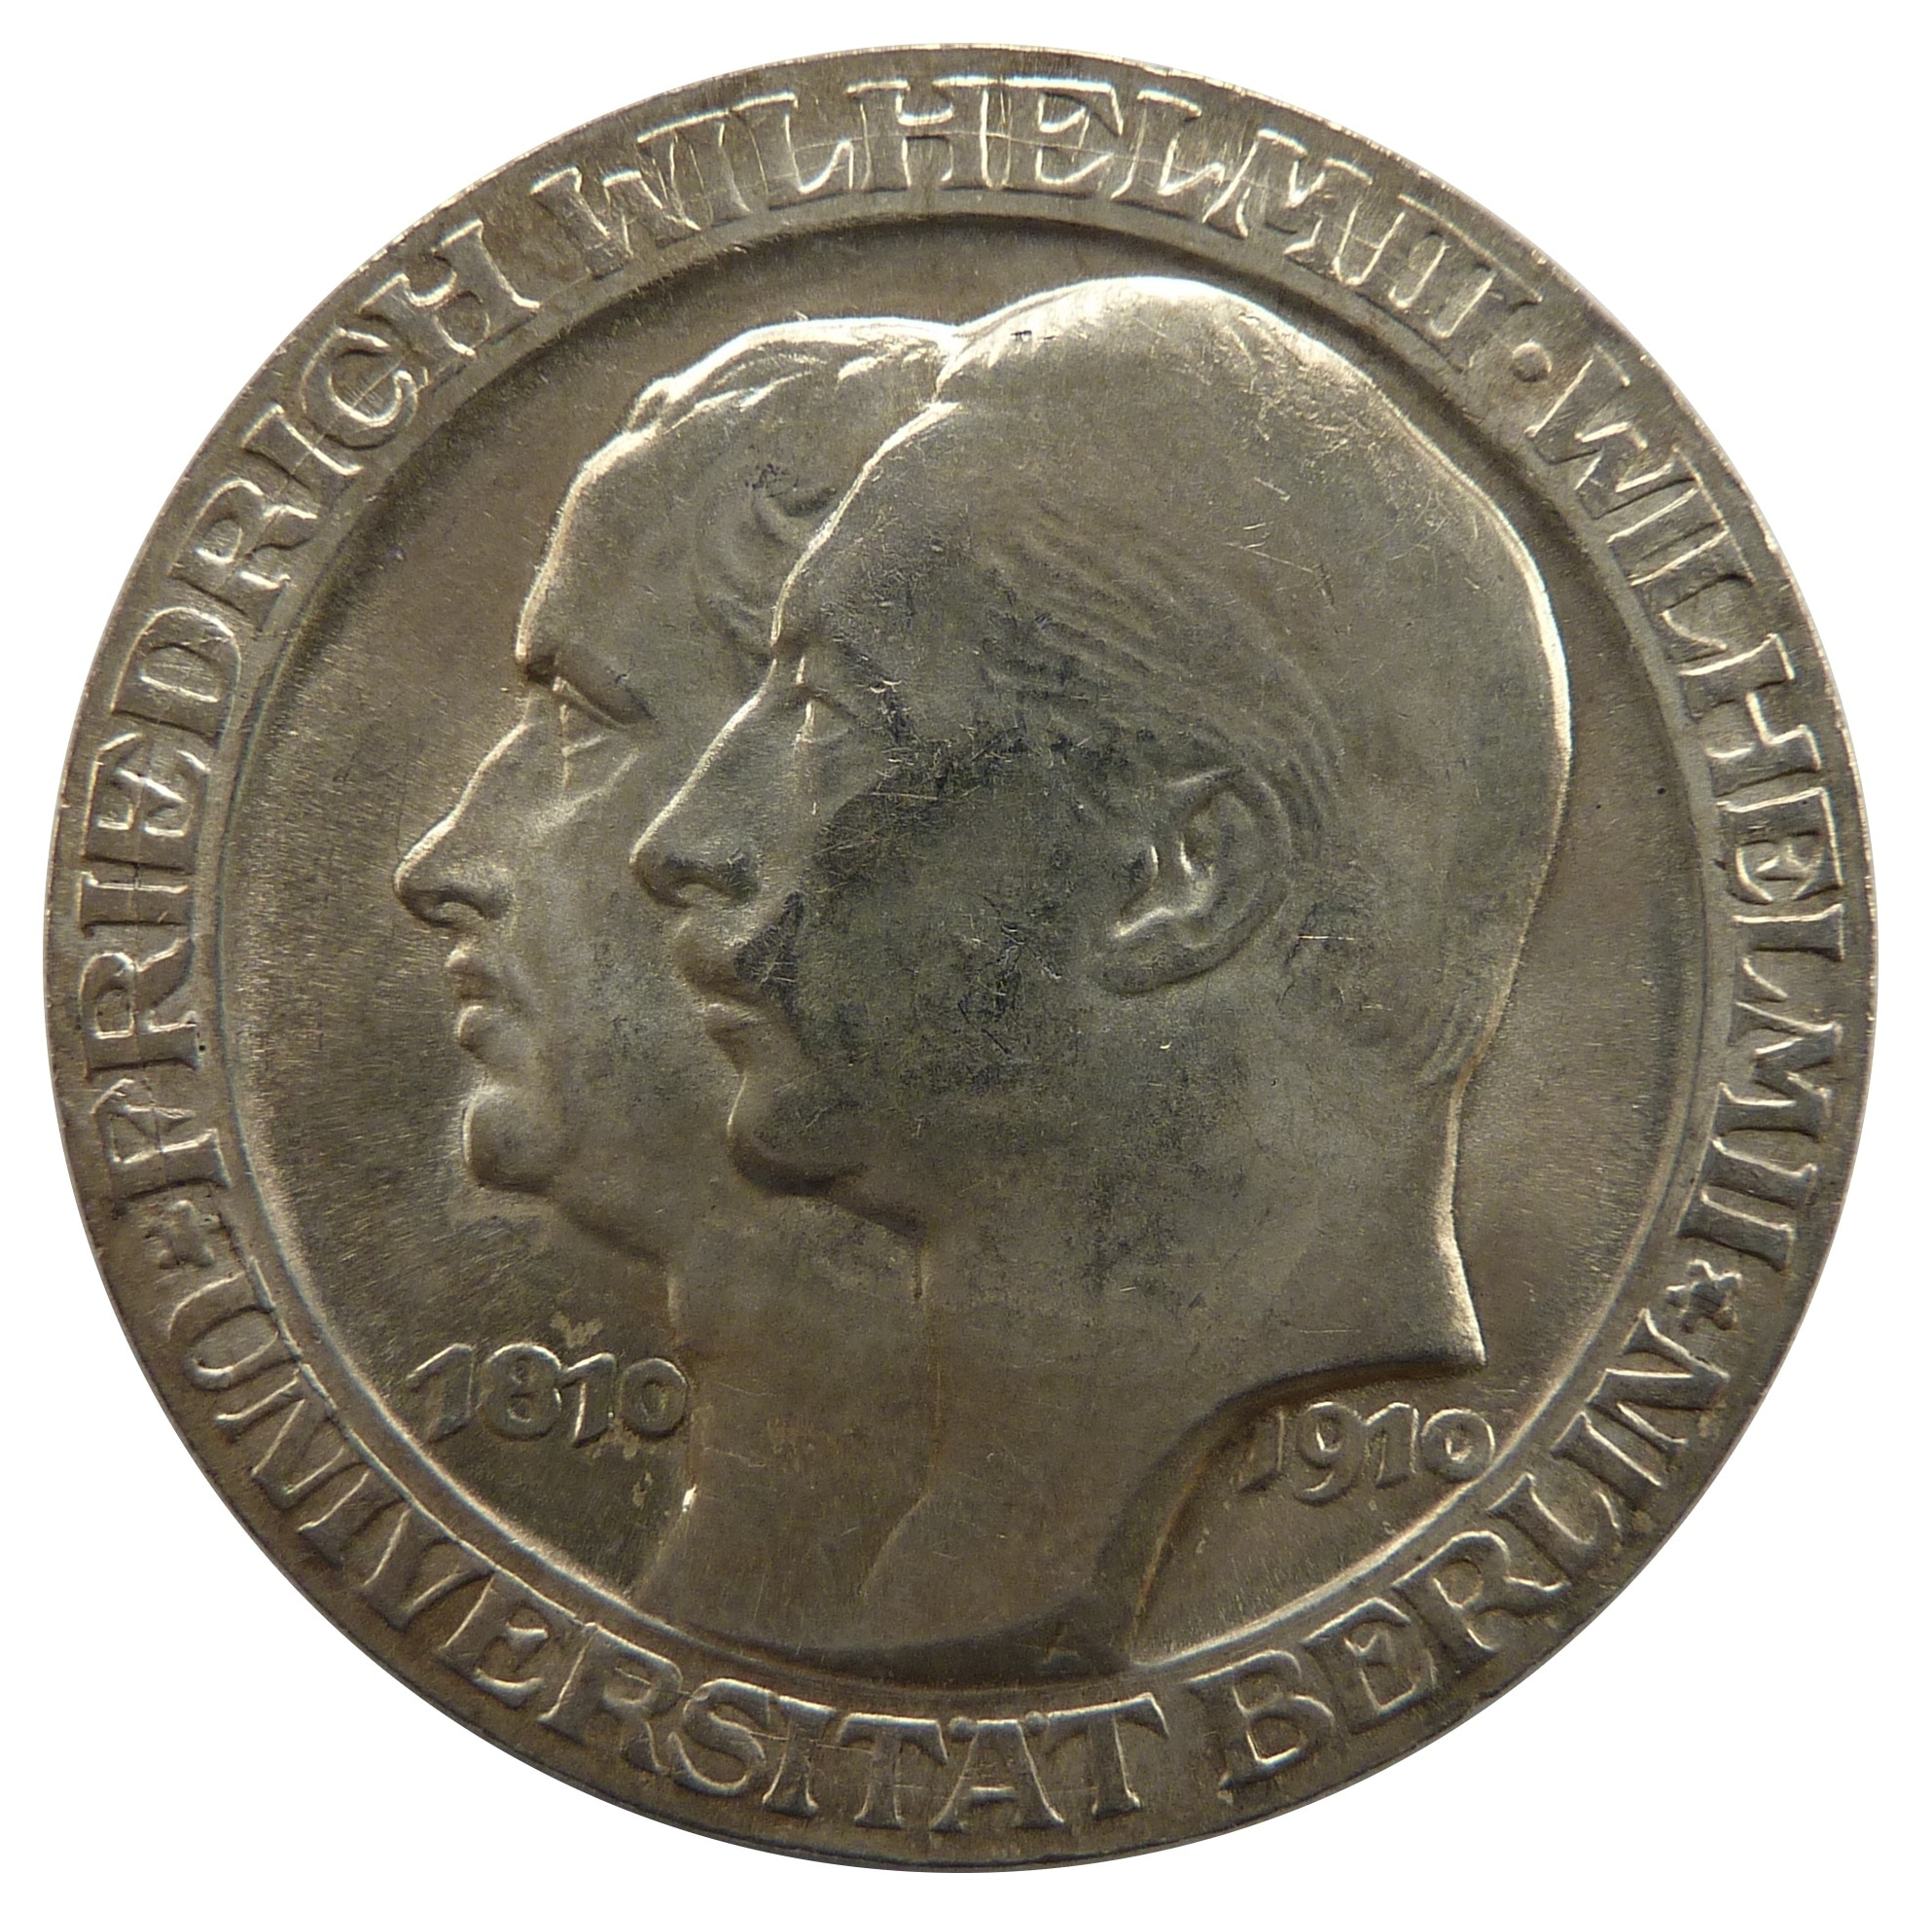 friedrich wilhelmih round commemorative coin